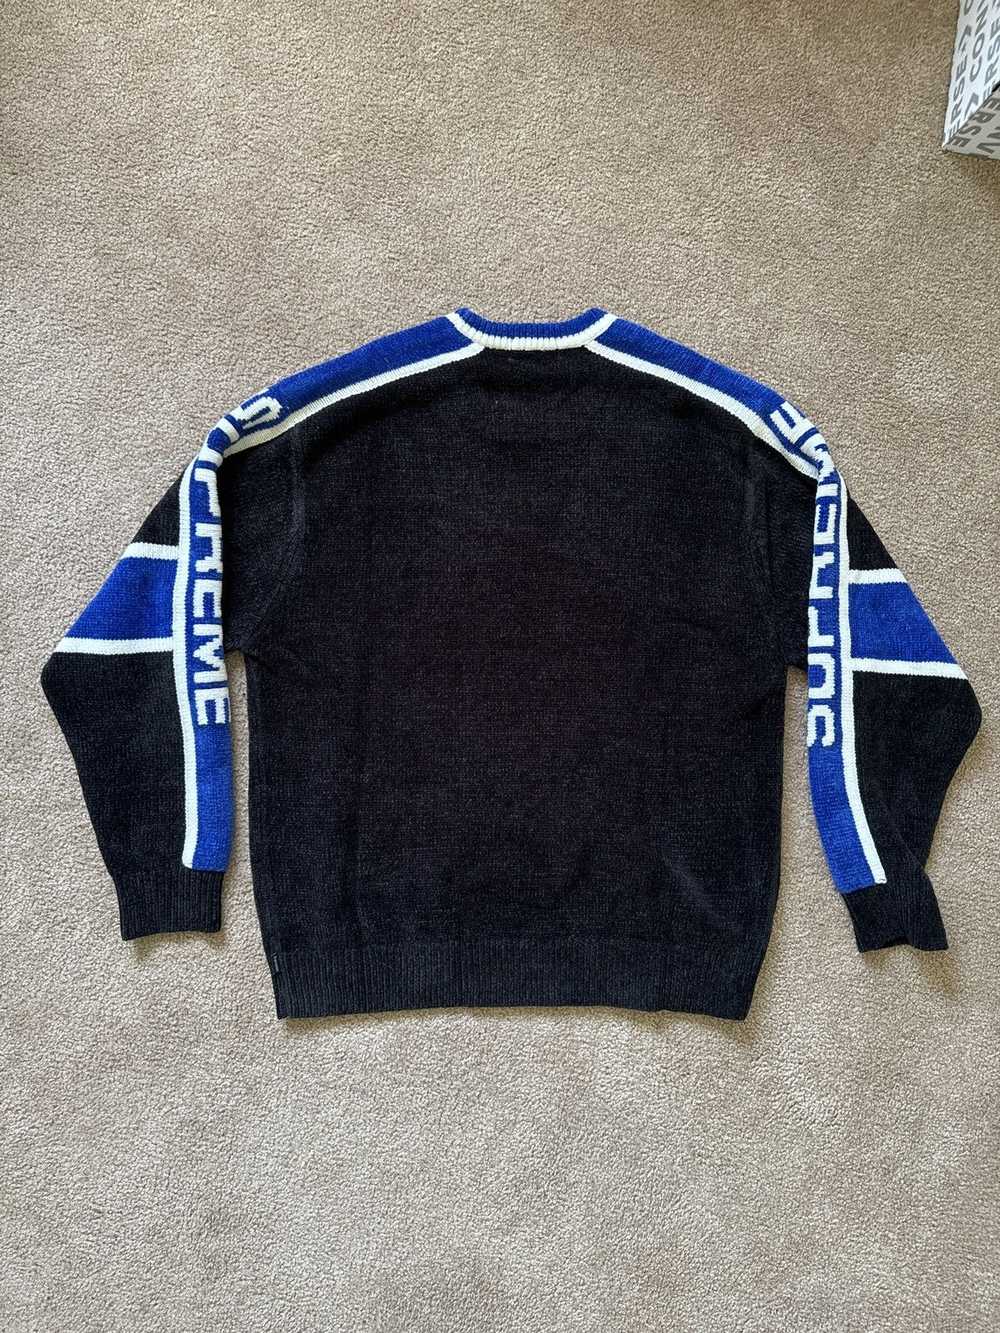 Supreme Supreme Chenille Sweater - image 2